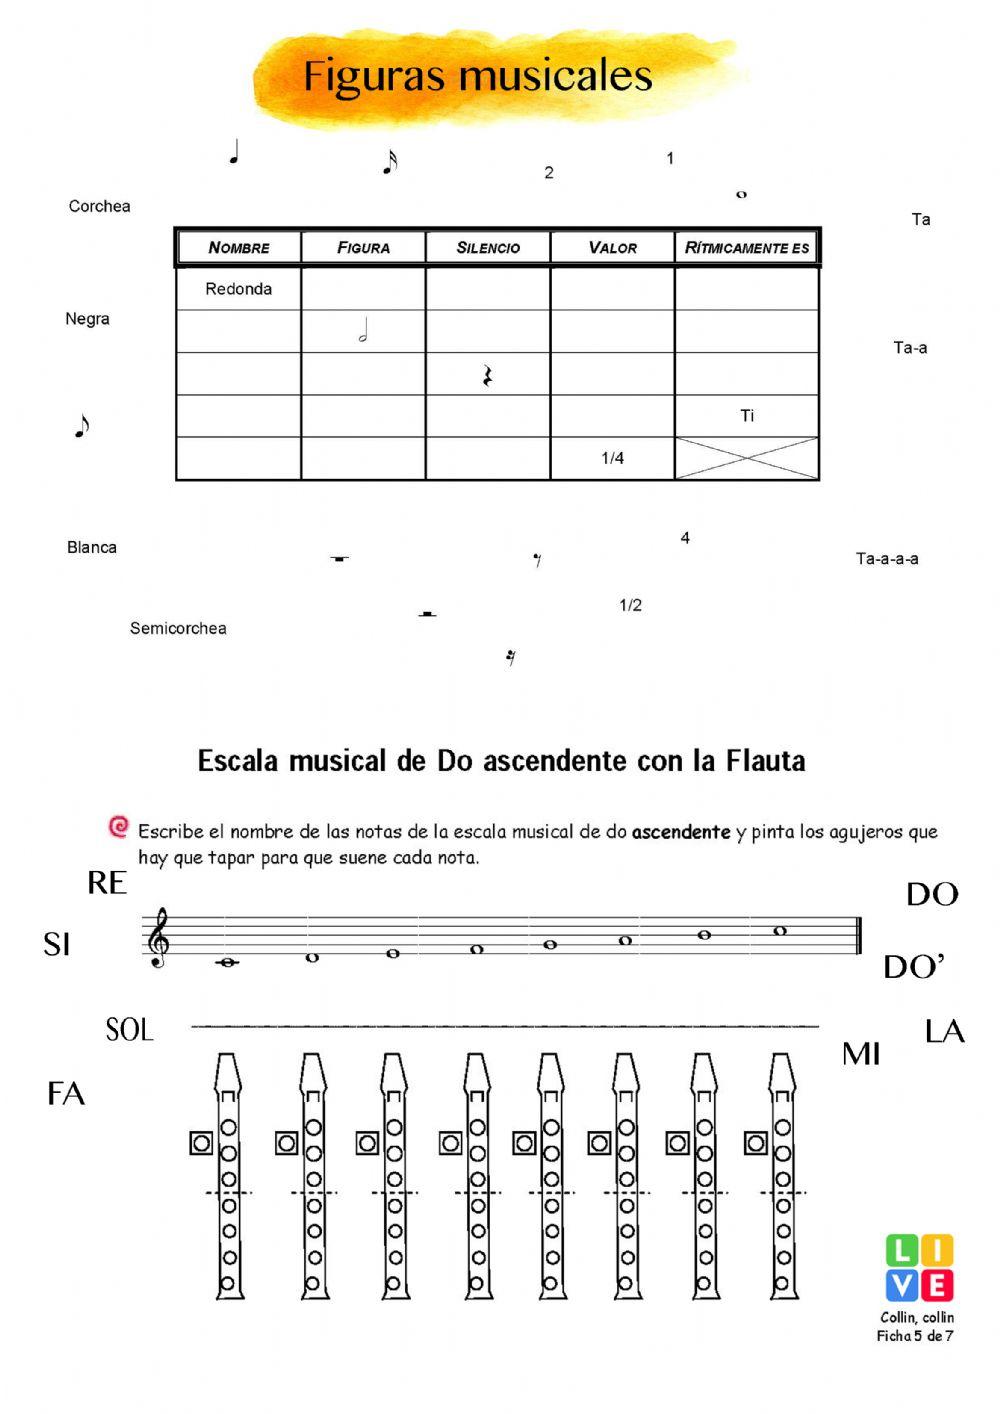 Figuras musicales, Escala de Do y Notas flauta